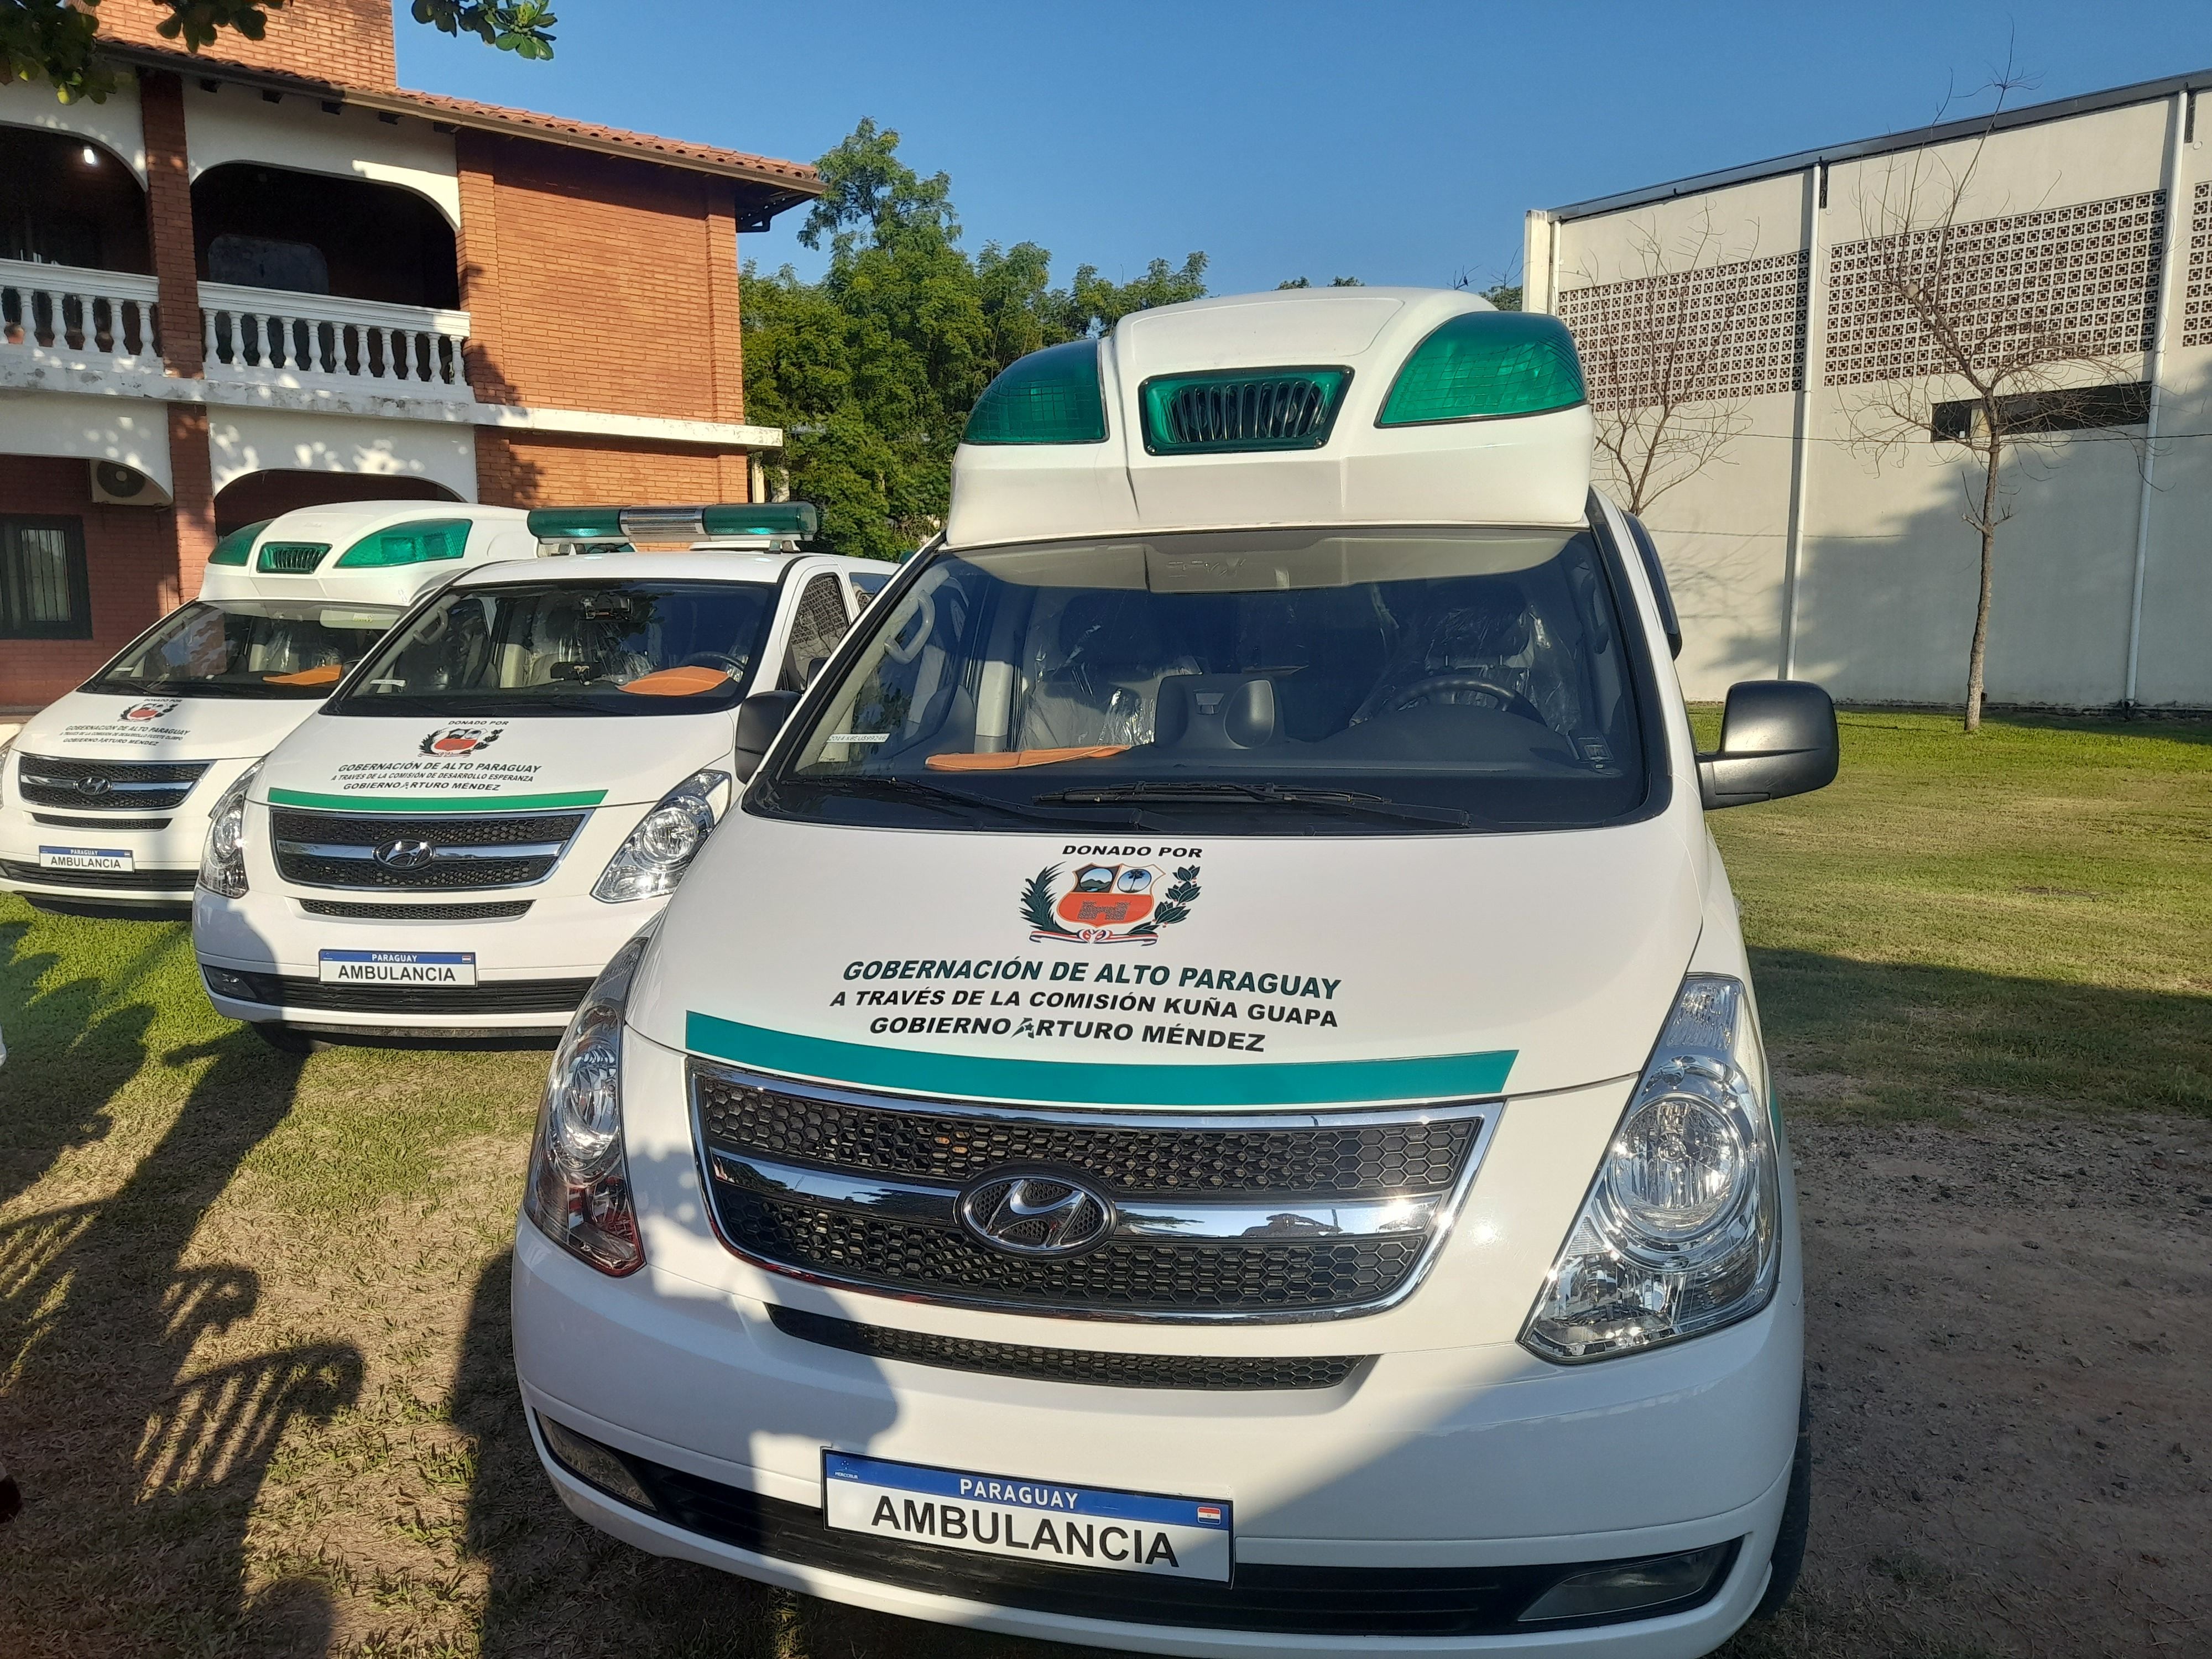 Las tres ambulancias donadas por la gobernacion a la region sanitaria del Alto Paraguay.